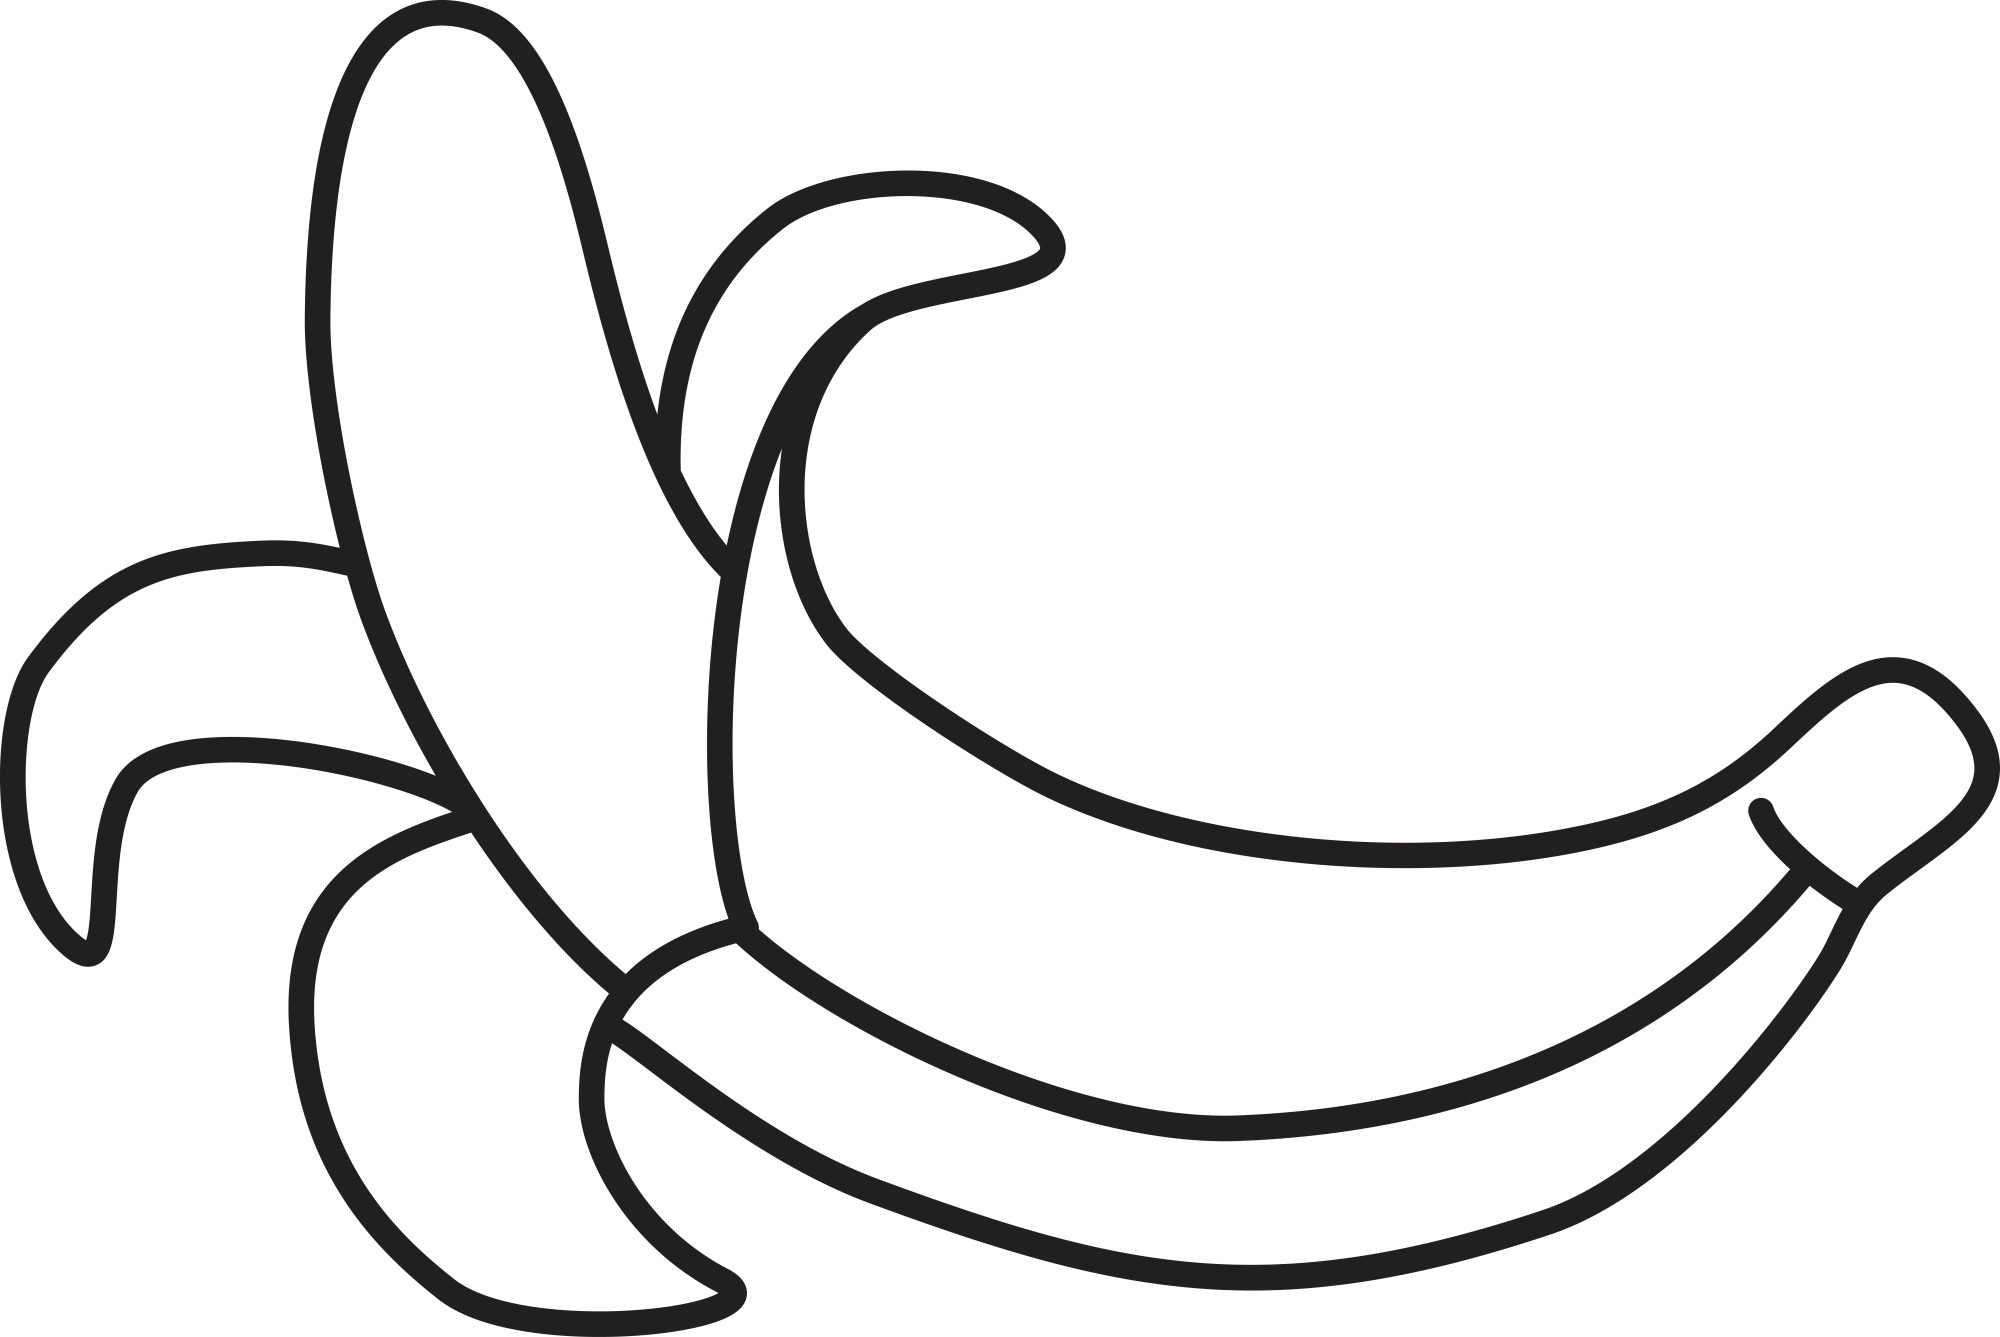 Раскраска для детей: сладкий банан